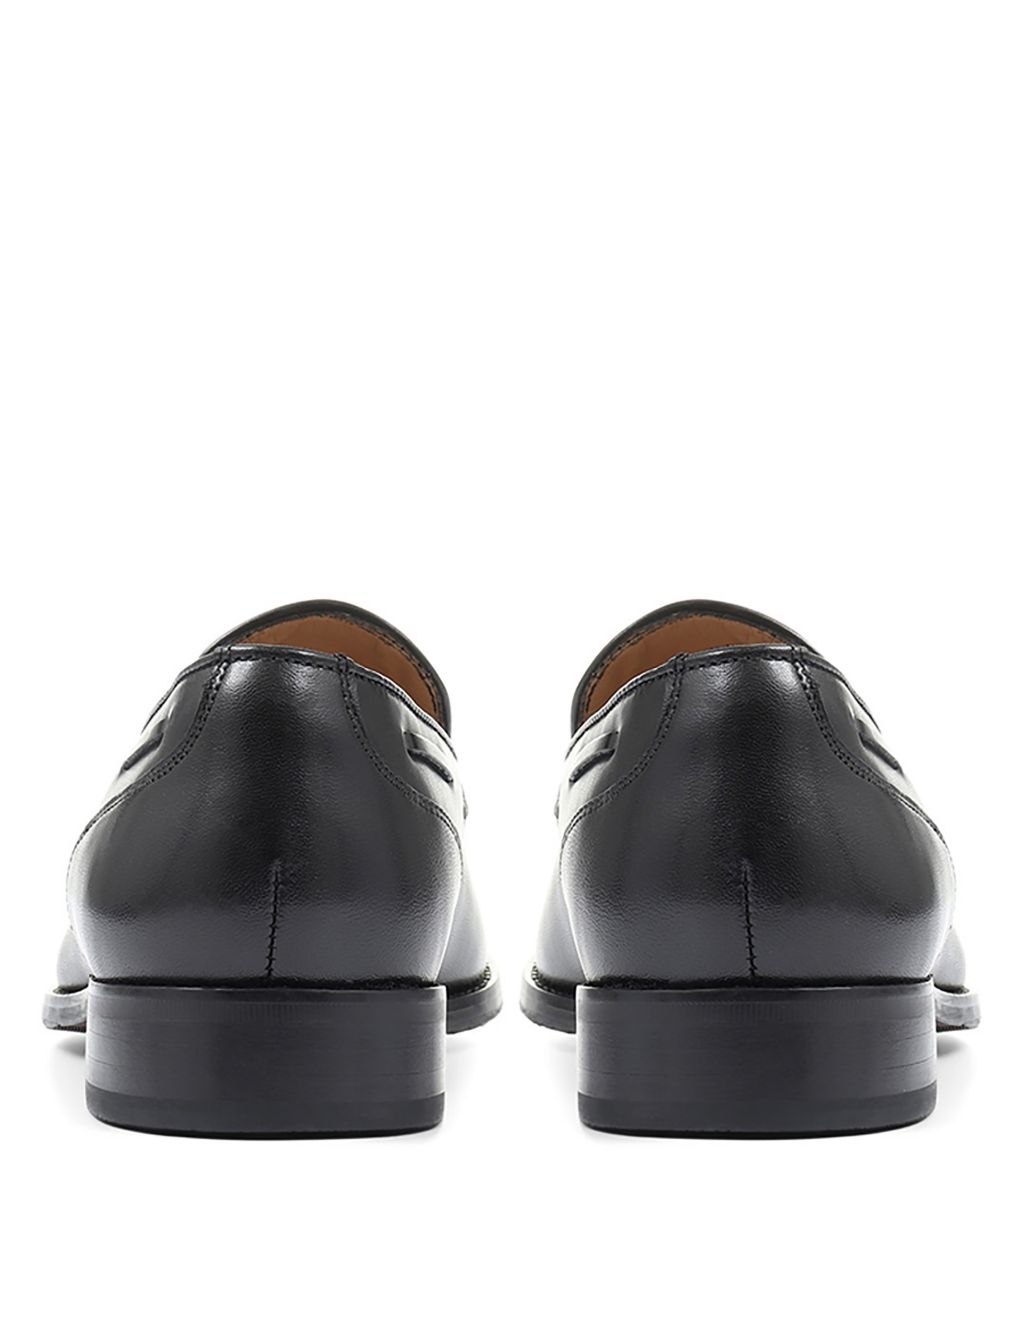 Leather Tassel Slip-On Loafers image 3